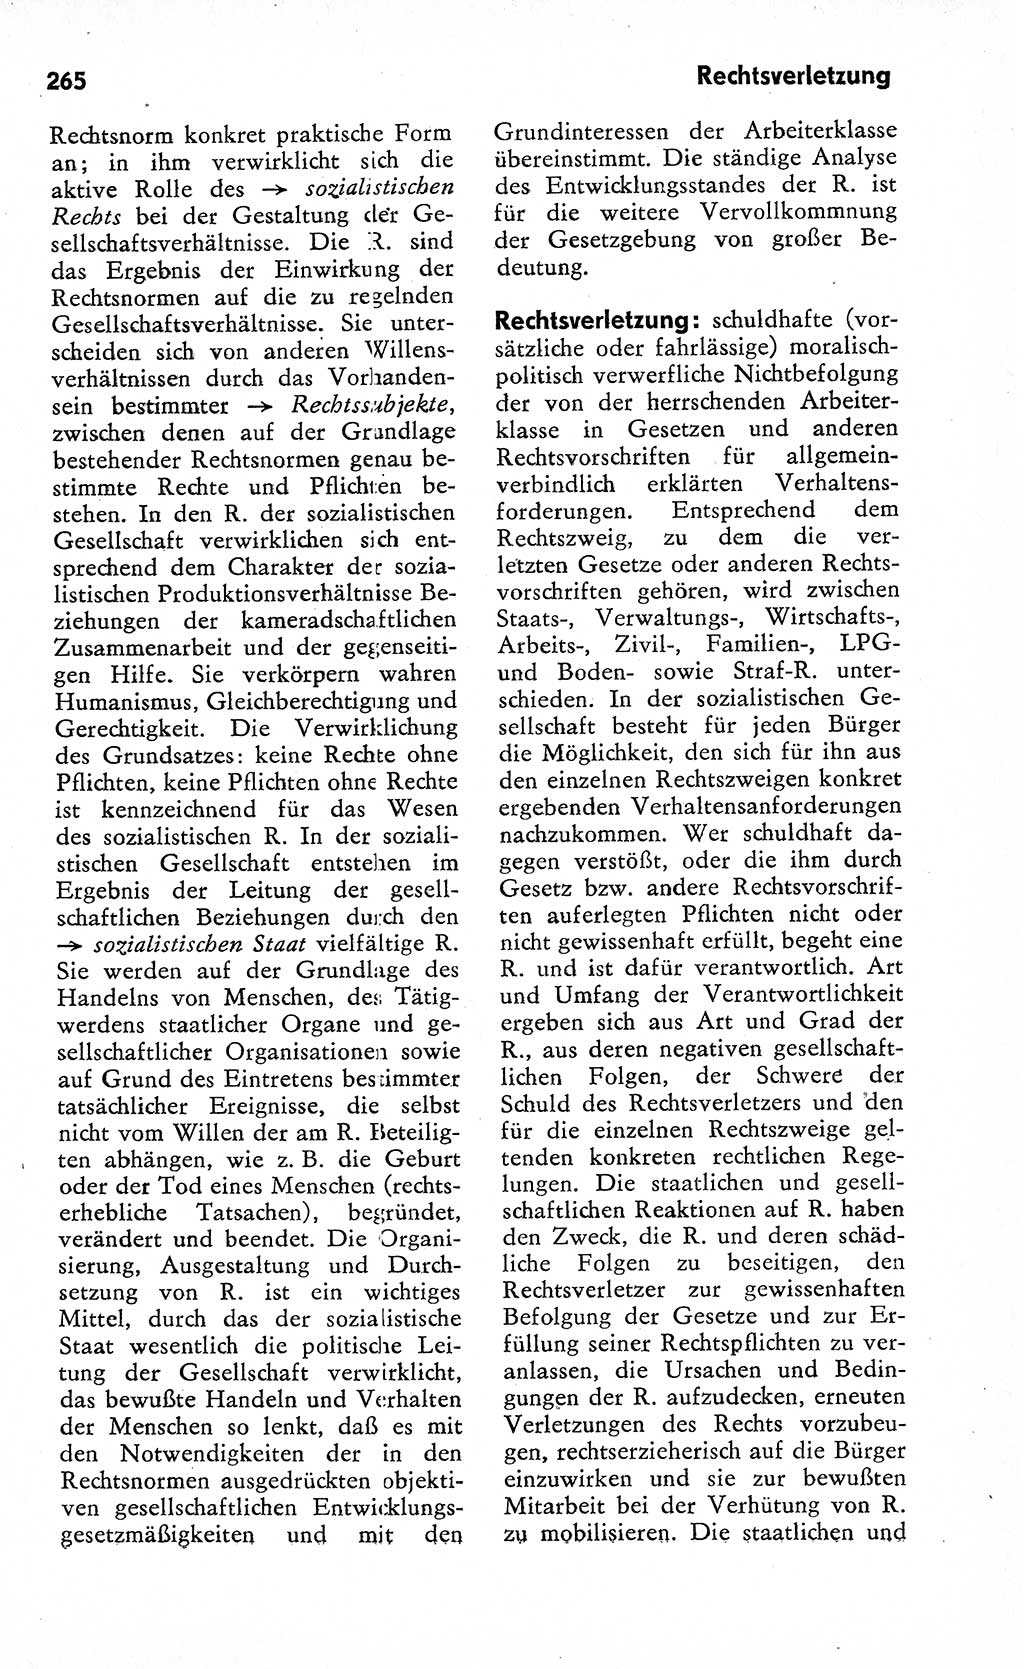 Wörterbuch zum sozialistischen Staat [Deutsche Demokratische Republik (DDR)] 1974, Seite 265 (Wb. soz. St. DDR 1974, S. 265)